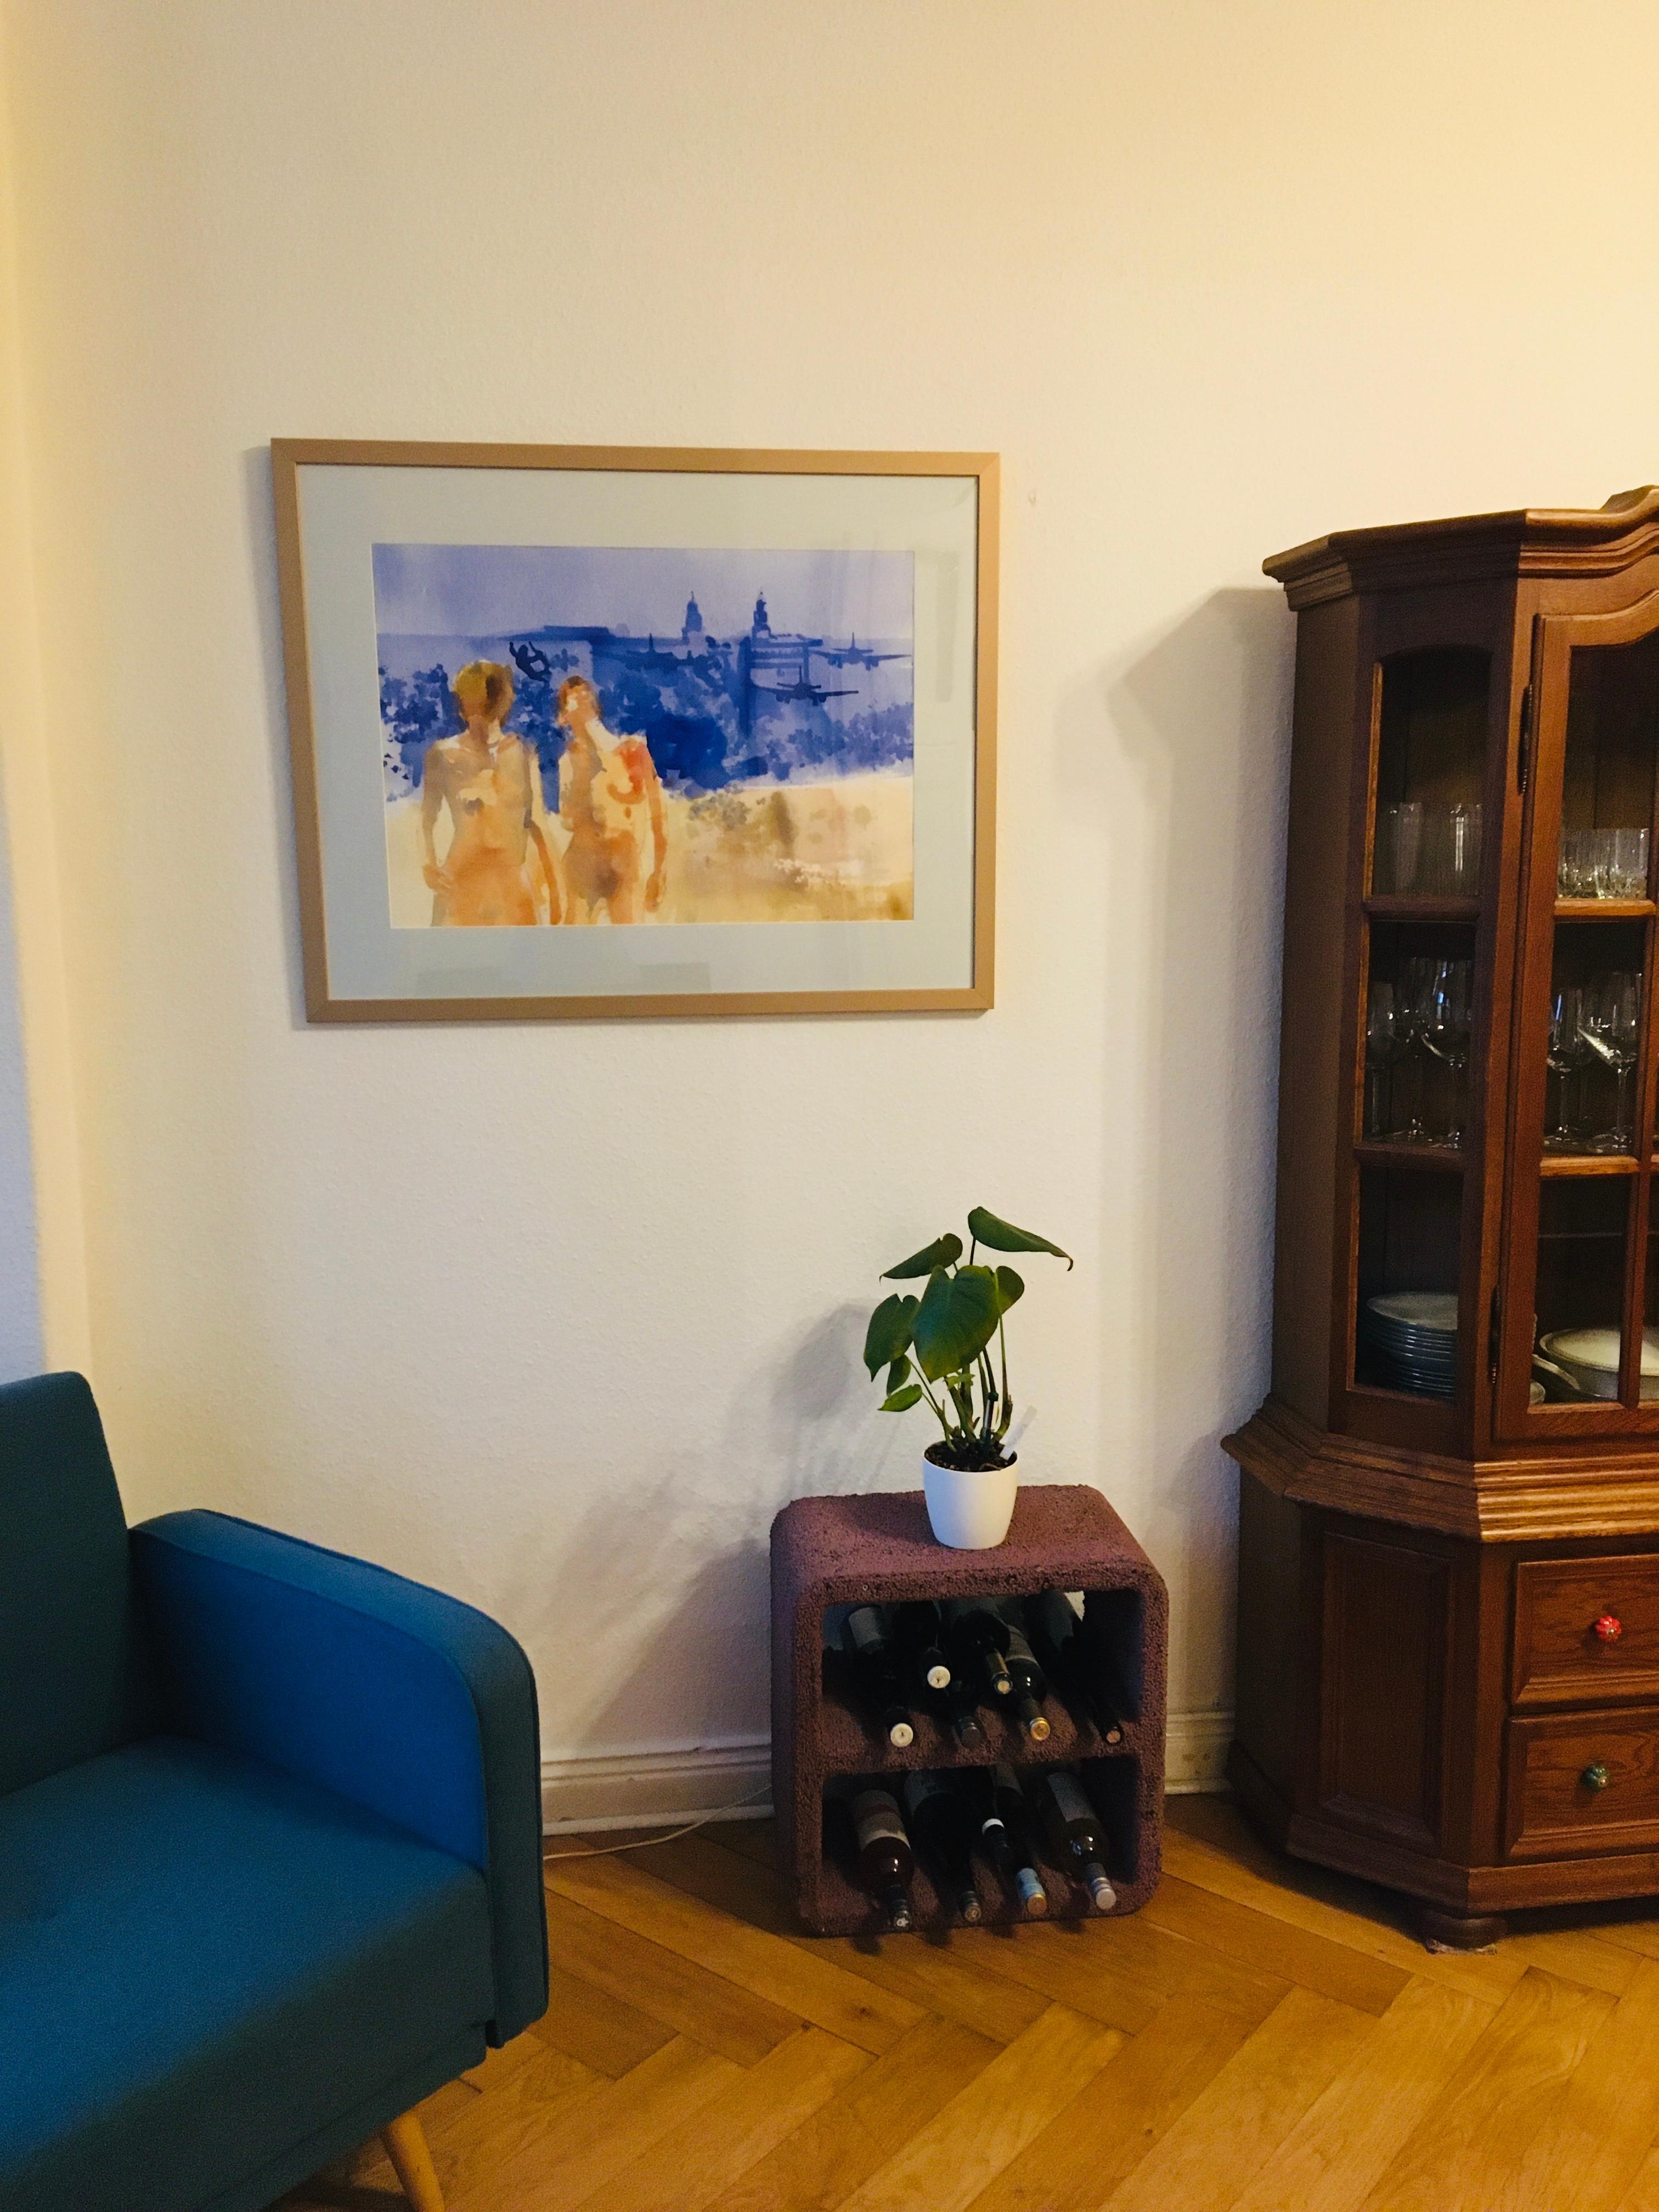 Neue Kunst im Wohnzimmer 🧡
#living #wohnzimmer #kunst #gemälde